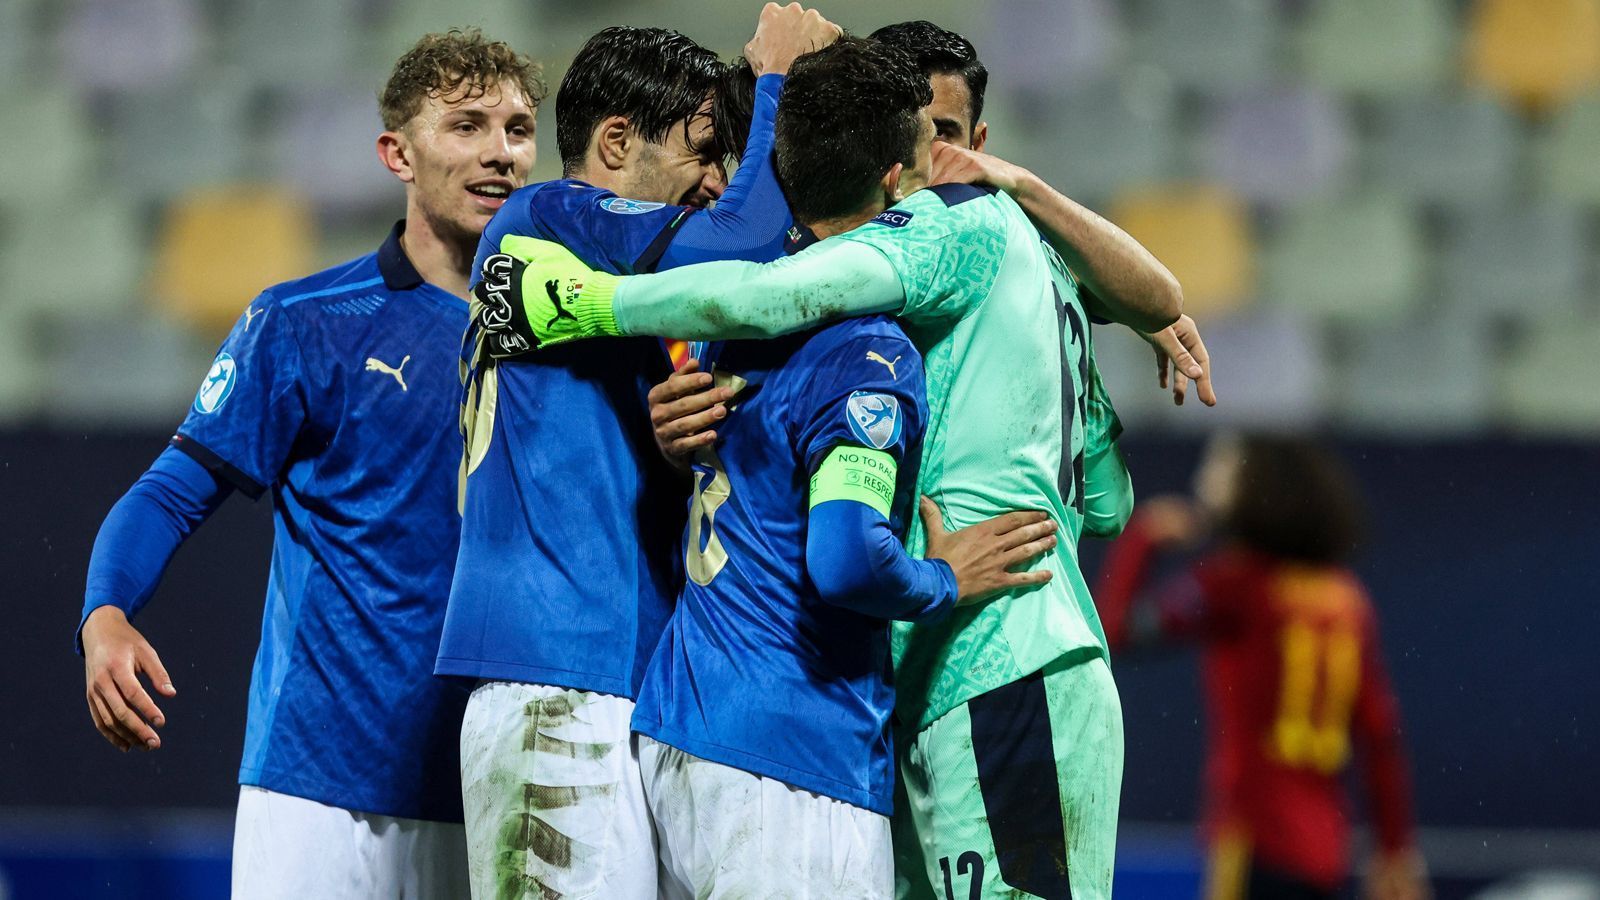 
                <strong>Italien </strong><br>
                Die Italiener haben den zweiten Platz der Gruppe B belegt. Das 4:0 im letzten Vorrundenspiel gegen Slowenien war ein echtes Ausrufezeichen. Zuvor trennten sich die Italiener mit einem 0:0 von Spanien und mit einem 1:1 von Tschechien. Italiens Top-Star ist der defensive Mittelfeldspieler Sandro Tonali von AC Mailand, der im ersten Vorrundenspiel allerdings die Rote Karte sah und für die folgenden beiden Partien gesperrt war.
              